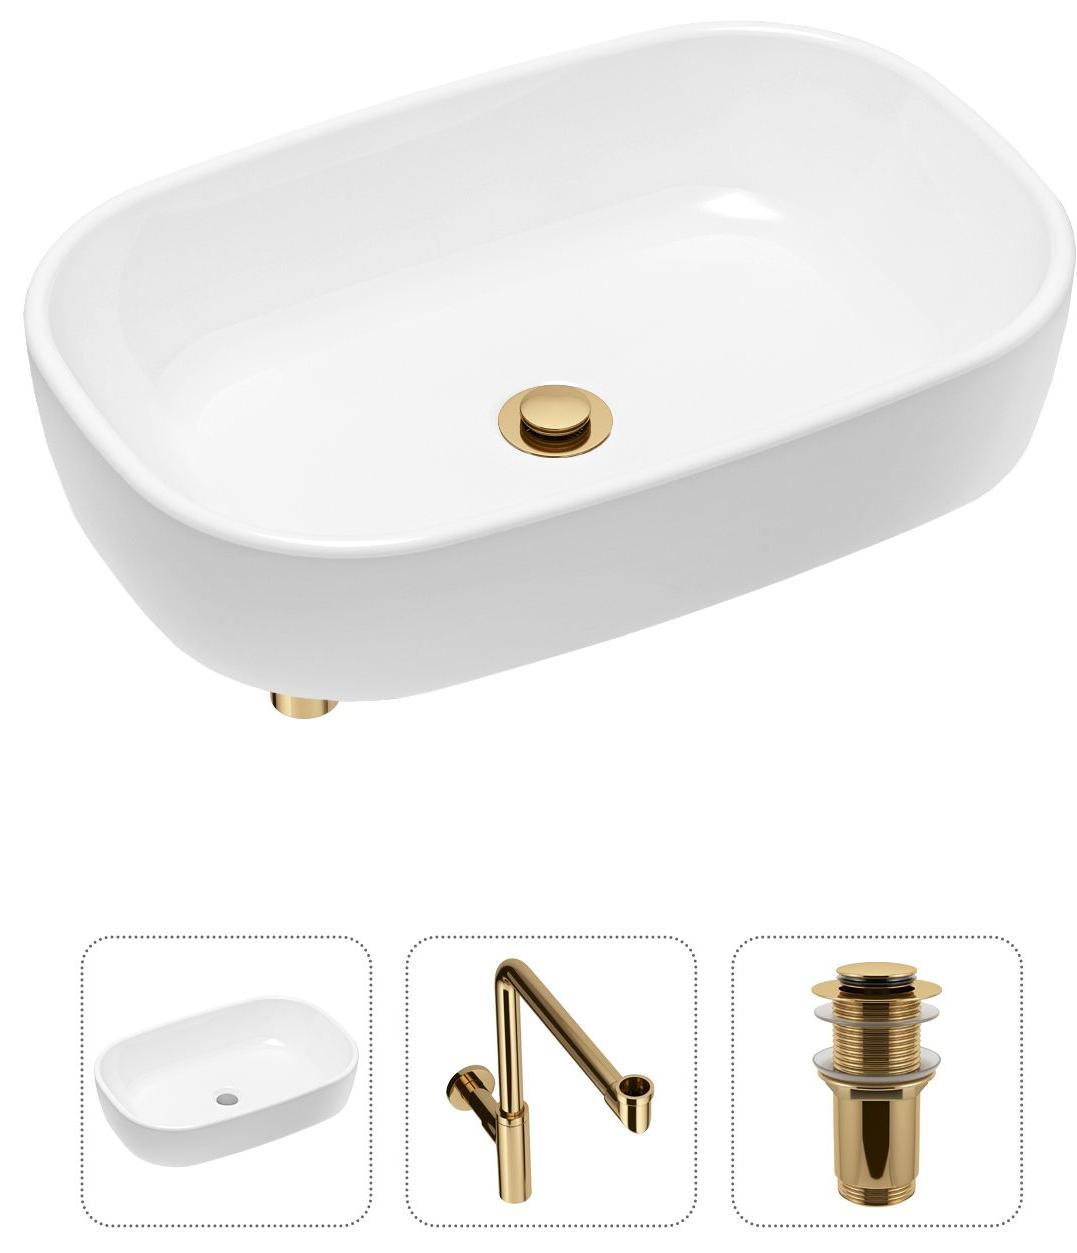 Комплект 3 в 1 Lavinia Boho Bathroom Sink 21520049: накладная фарфоровая раковина 54 см, металлический сифон, донный клапан